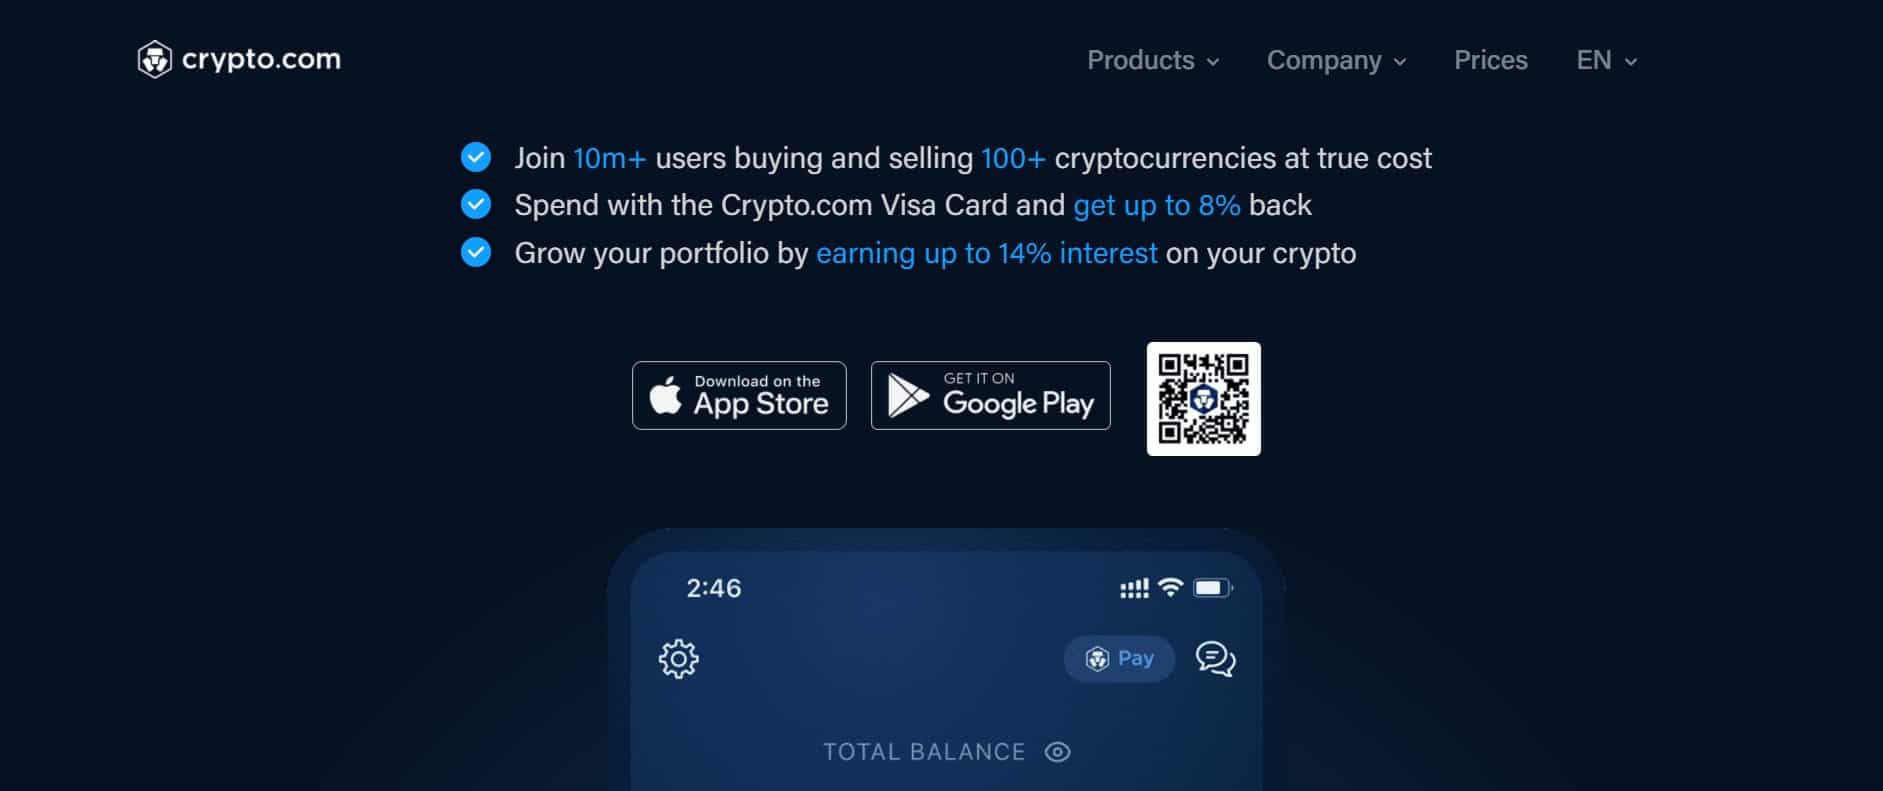 Crypto.com website